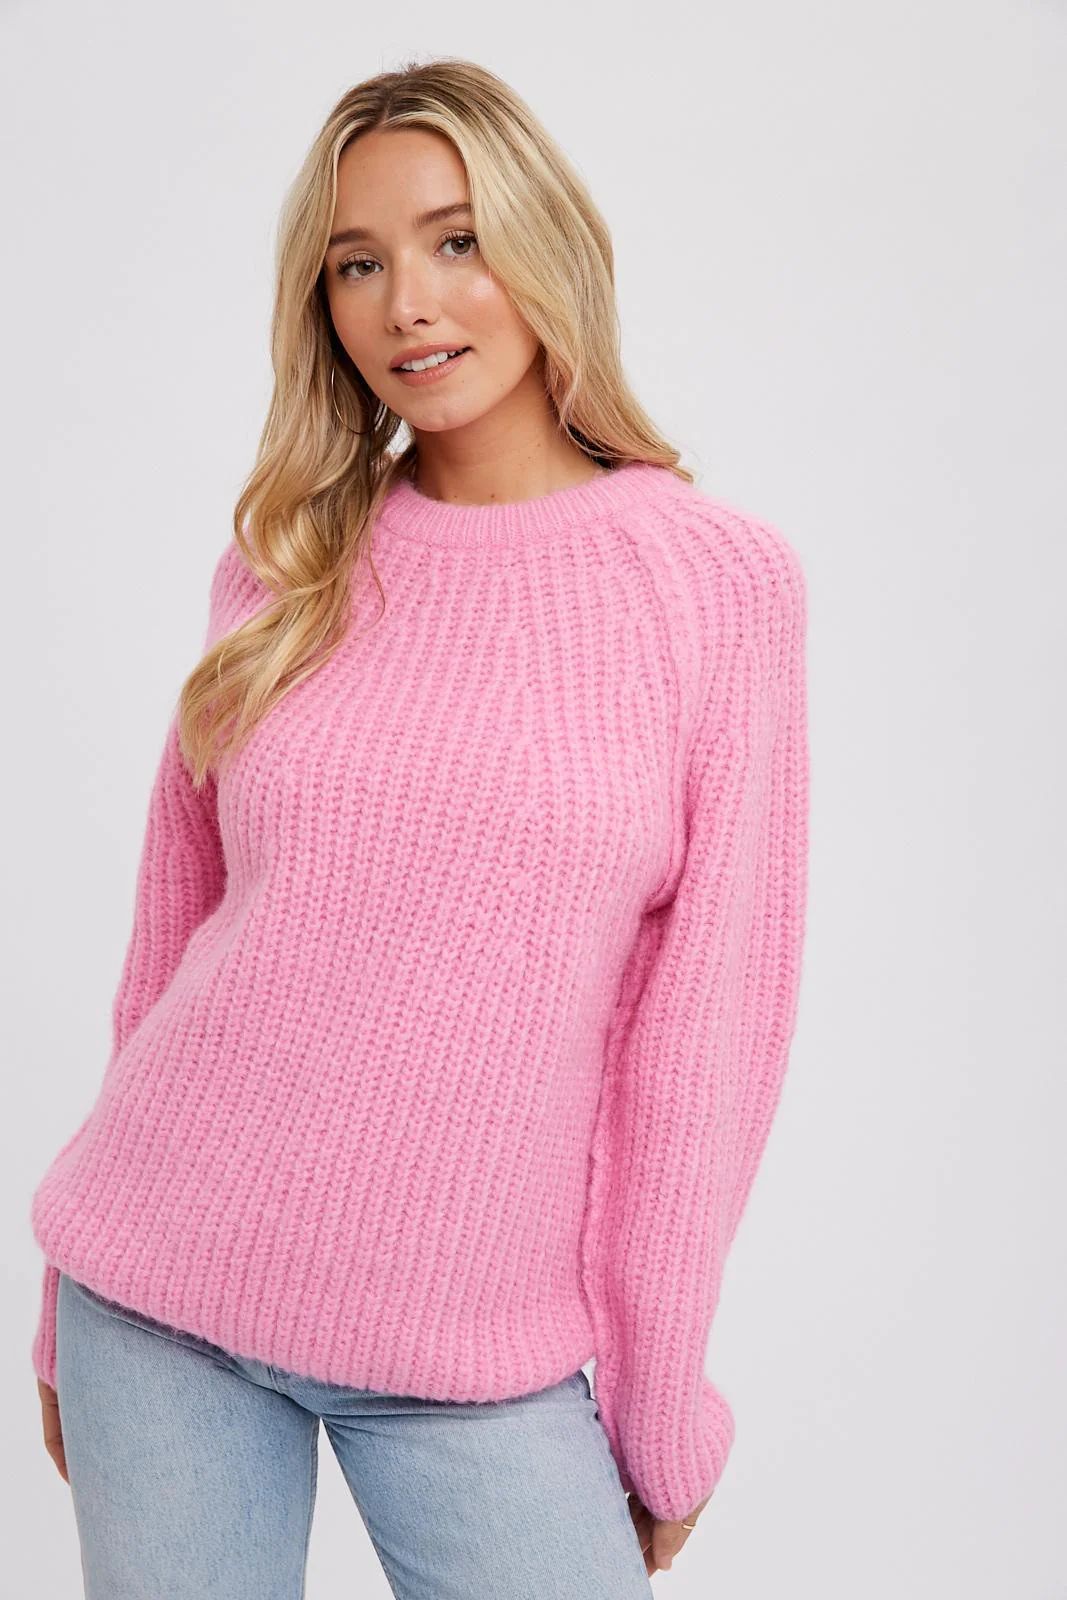 Pink Basic Chunky Knit Sweater | PinkBlush Maternity